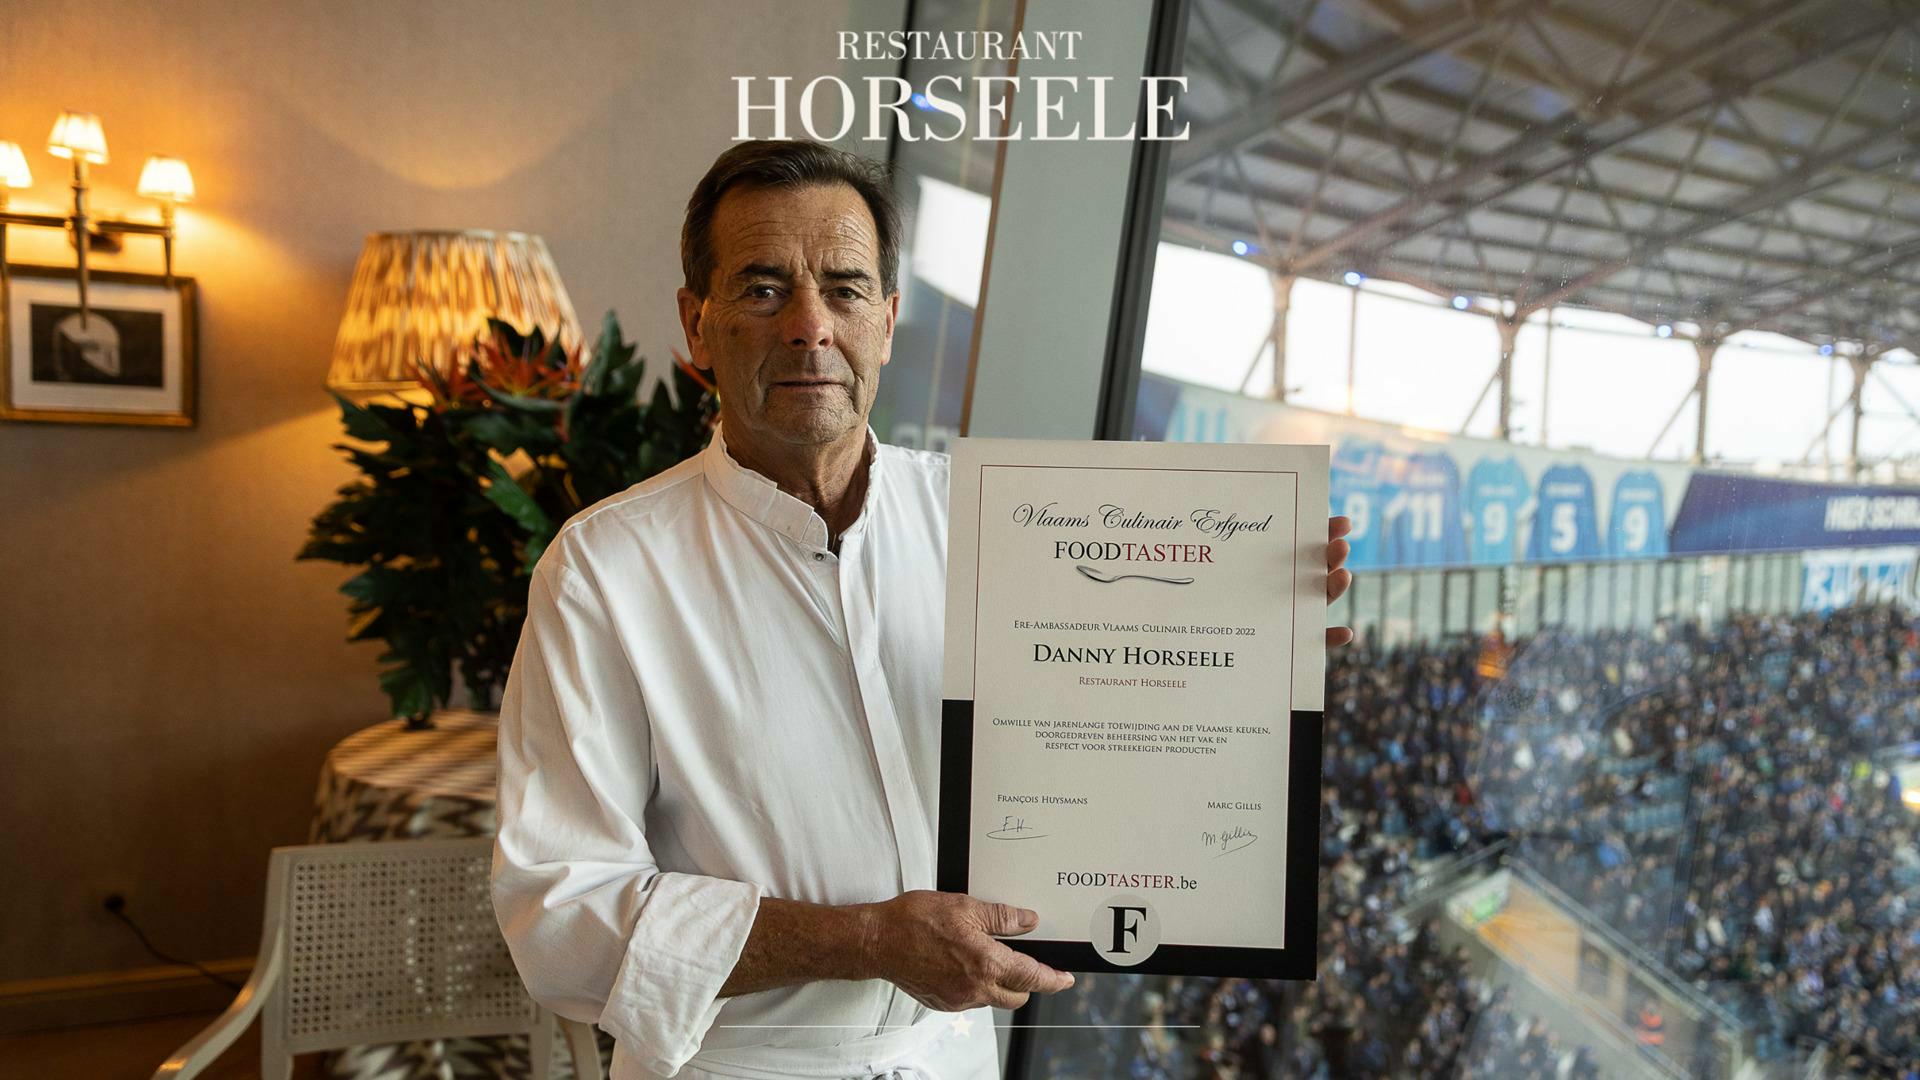 Restaurant Horseele* pakt uit met score van 94/100 op FoodTaster